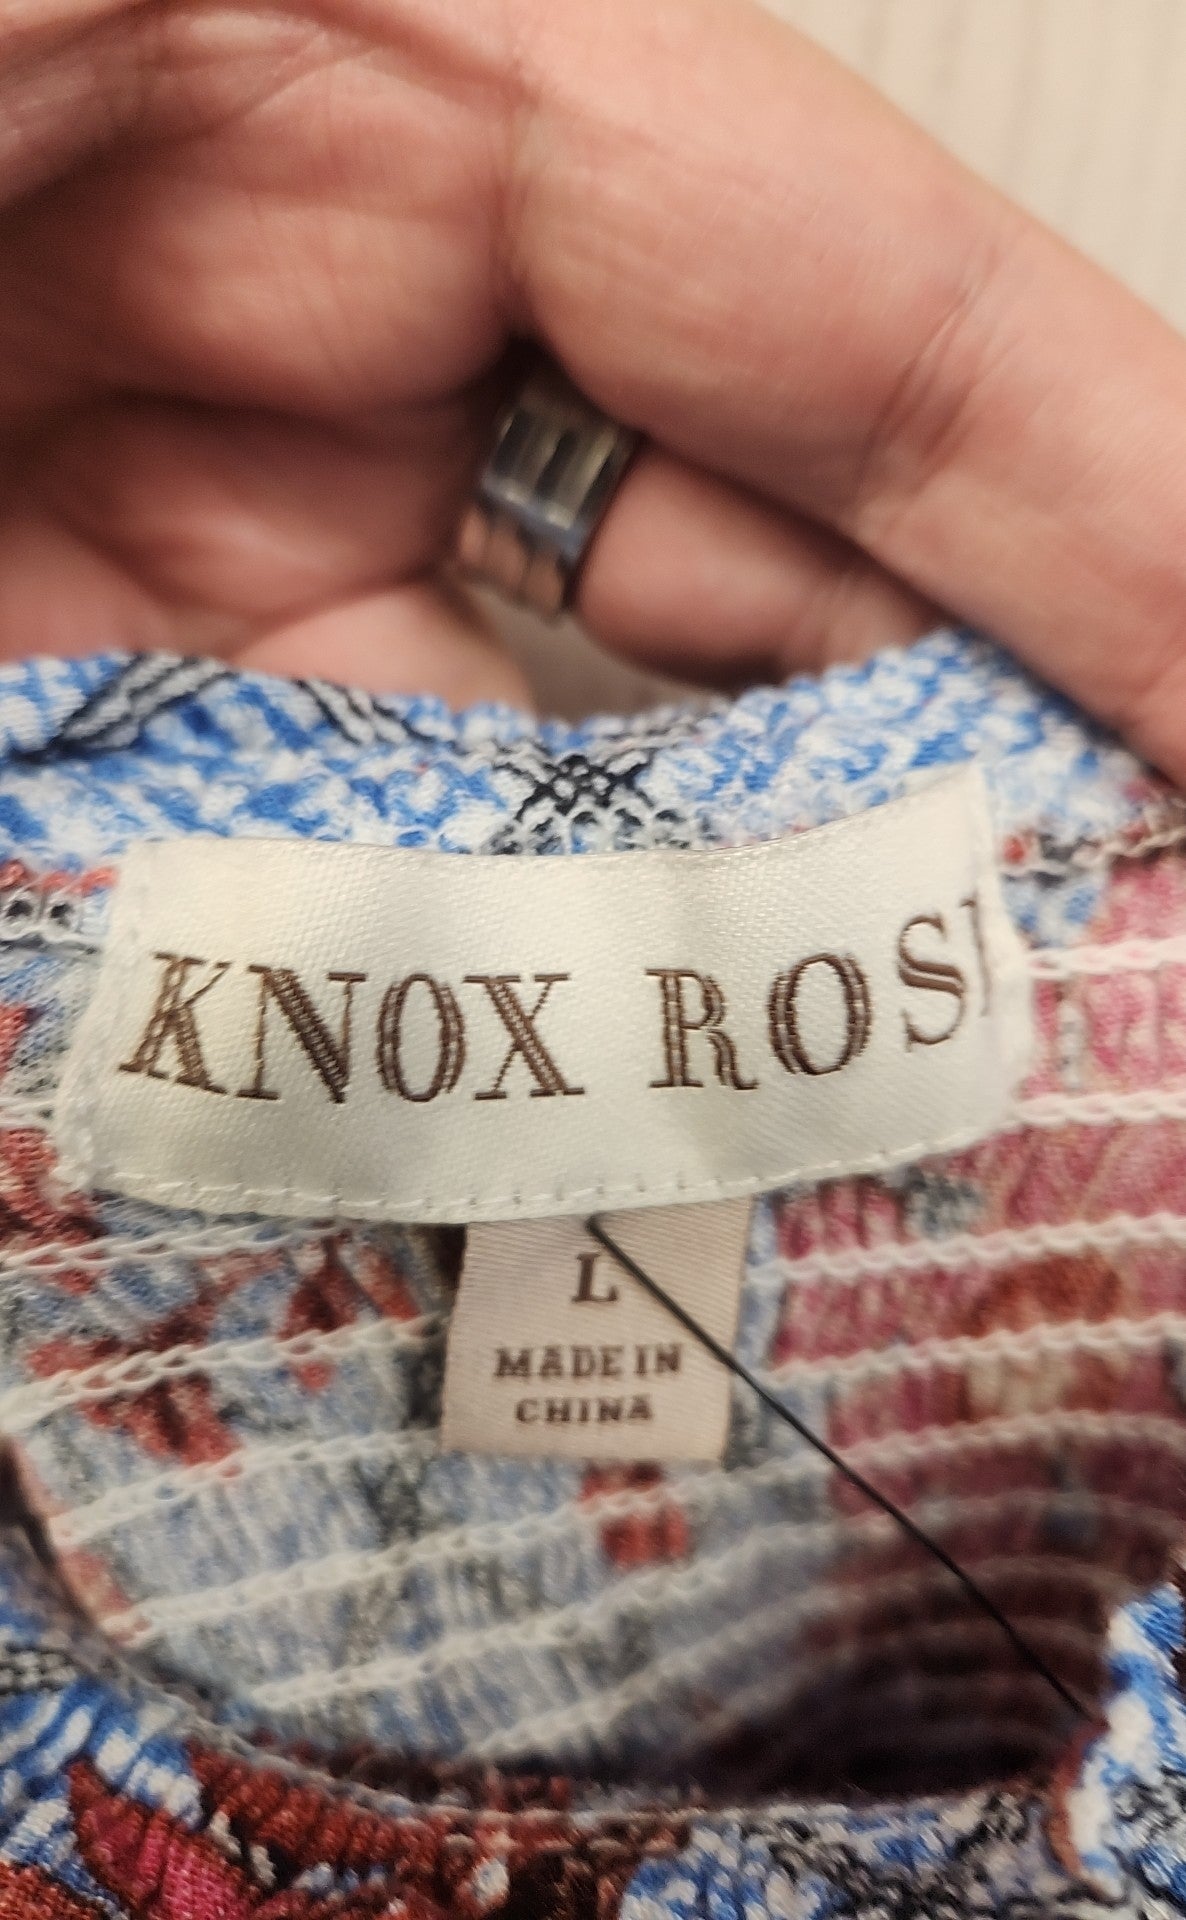 Knox Rose Women's Size L Blue Floral Dress